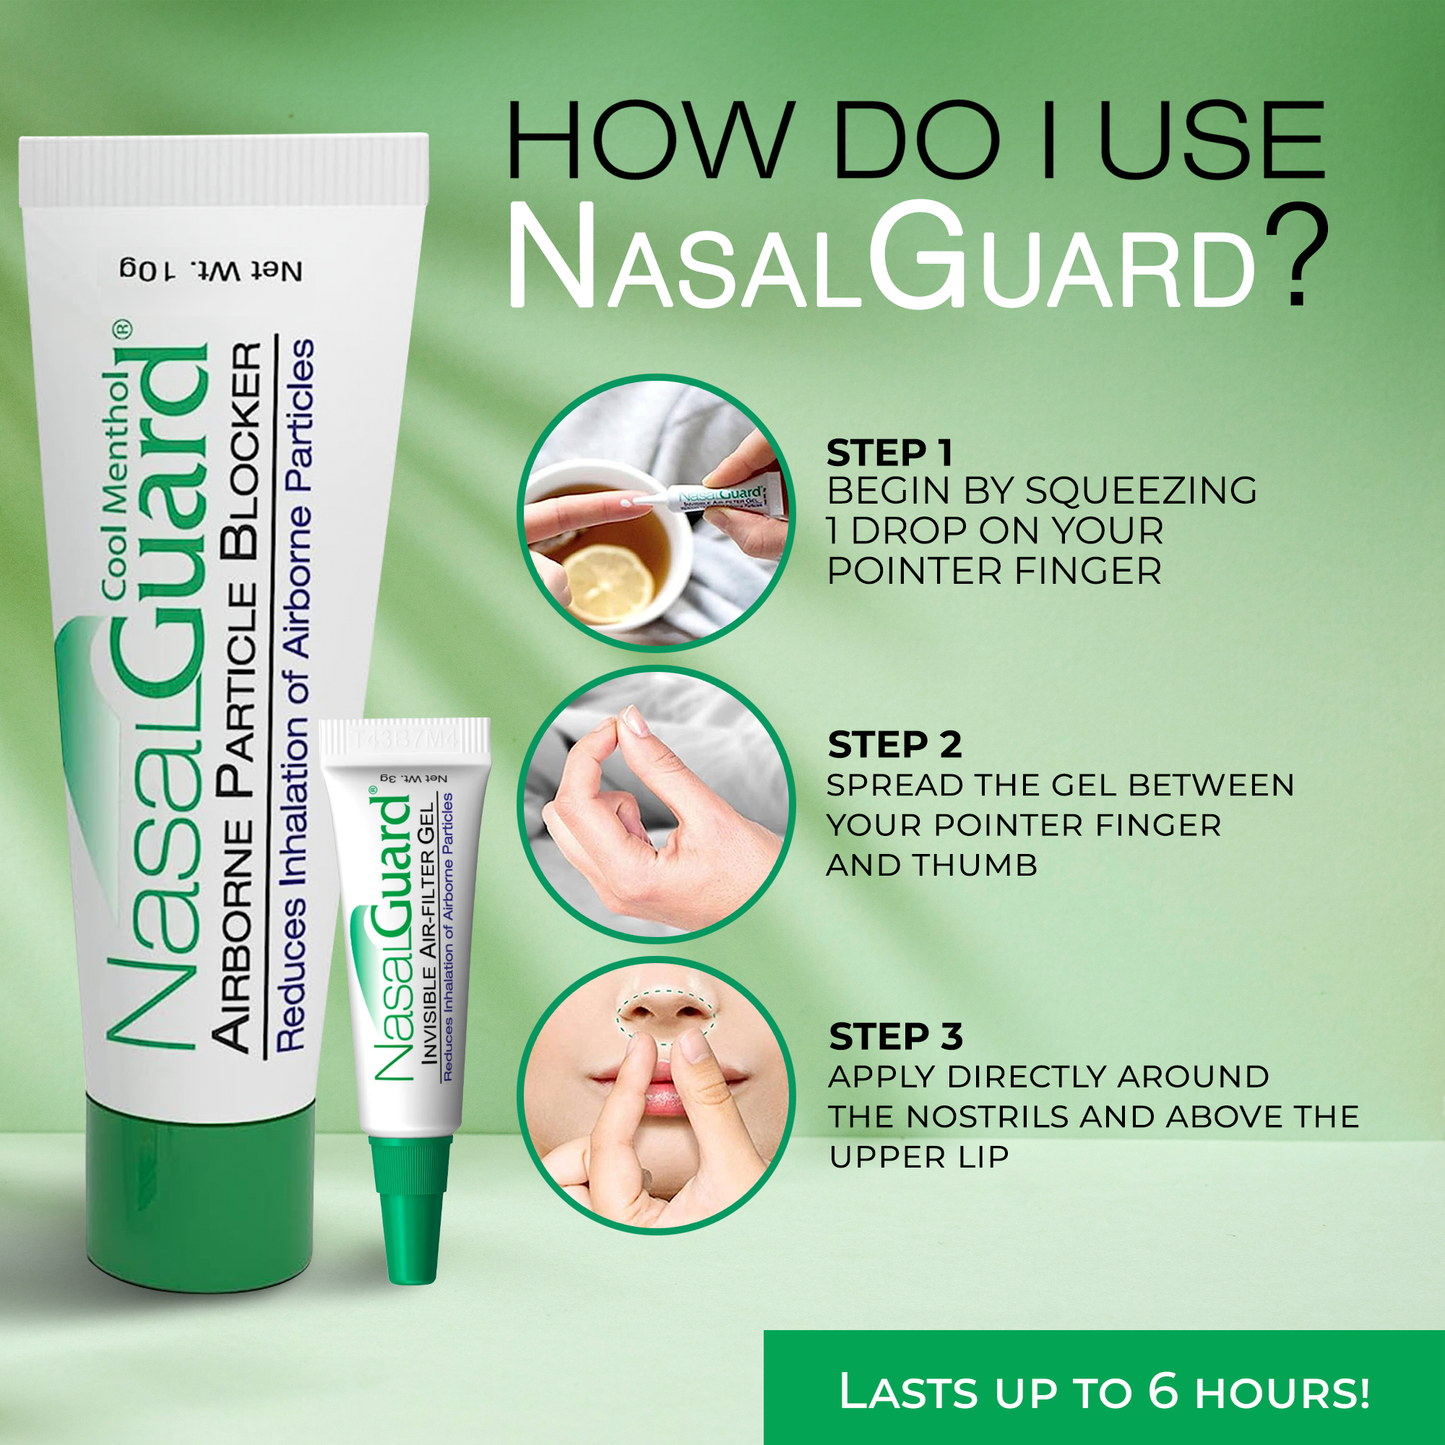 NasalGuard Allergy Relief Gel - Drug-Free, Cool Menthol, 3g Tube